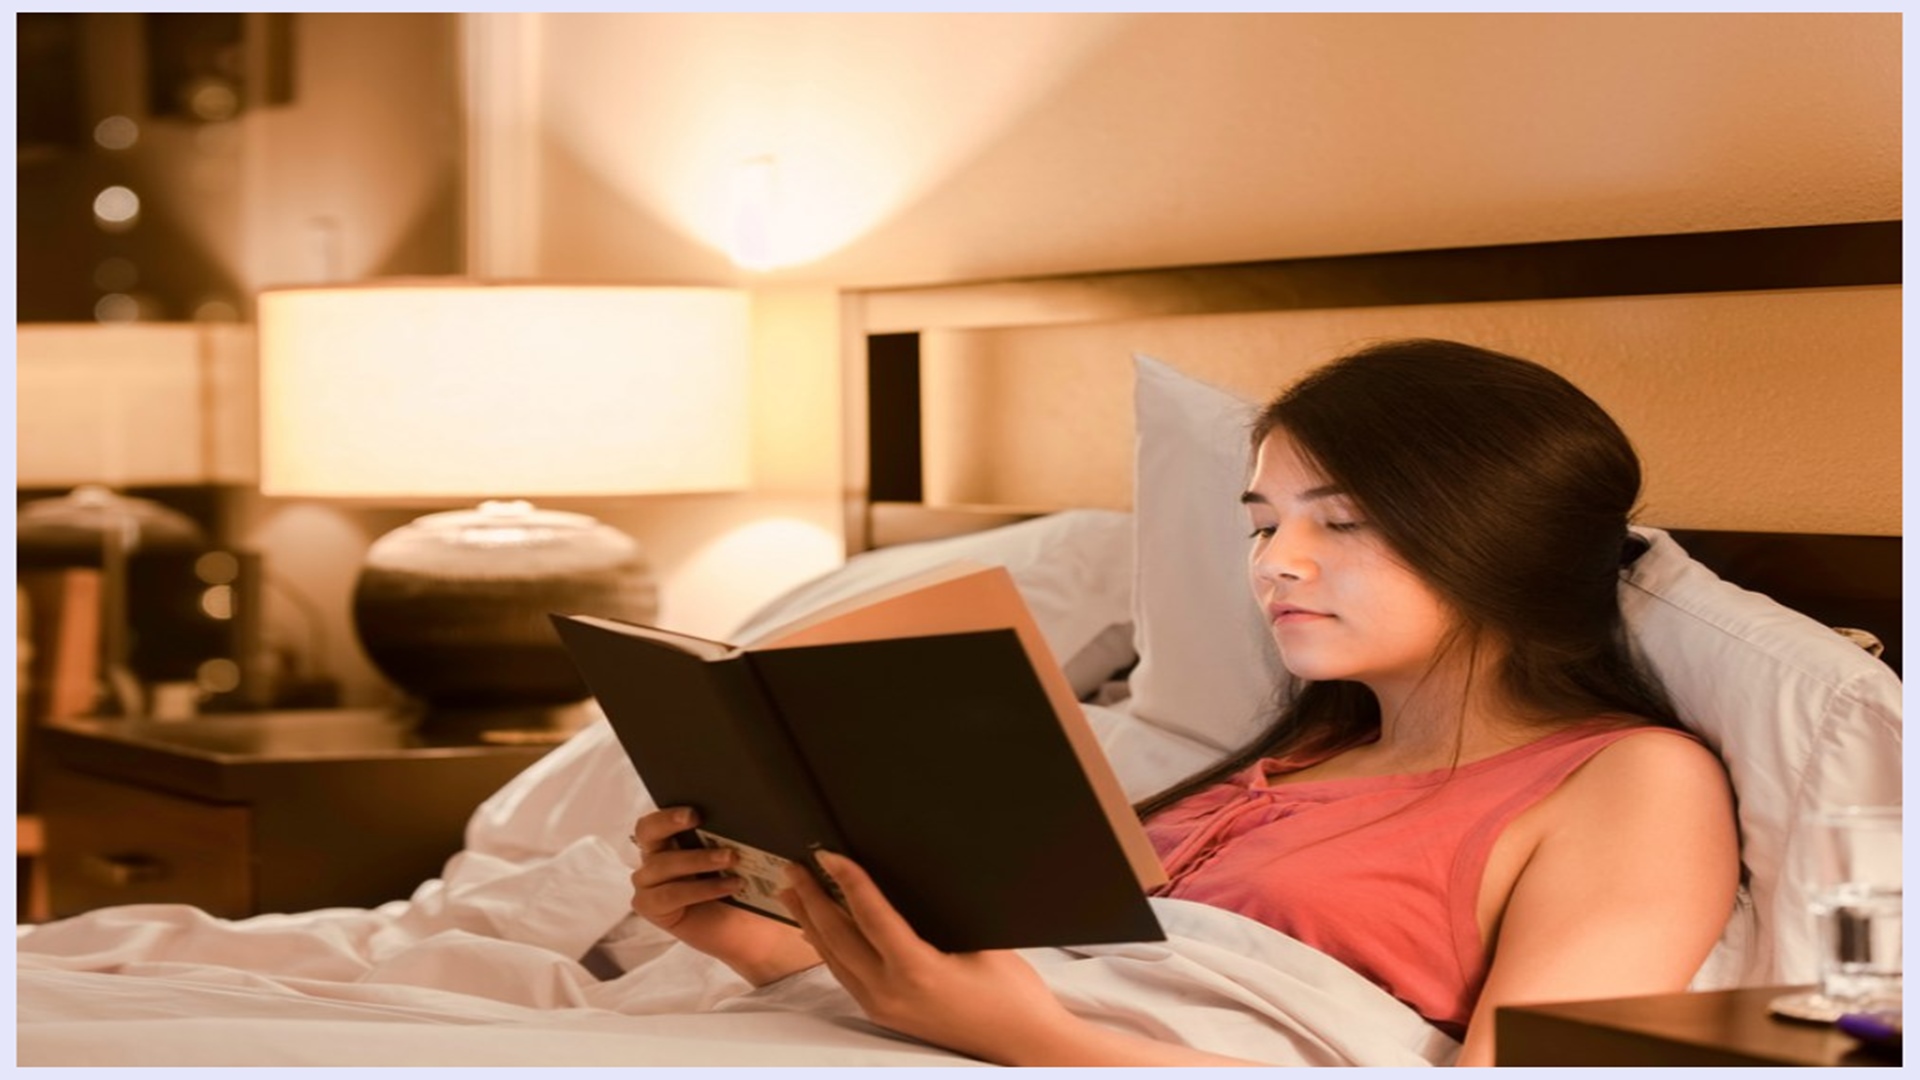 She reads in the evening. Чтение в спальне. Чтение в кровати. Чтение перед сном. Ночное чтение в кровати.